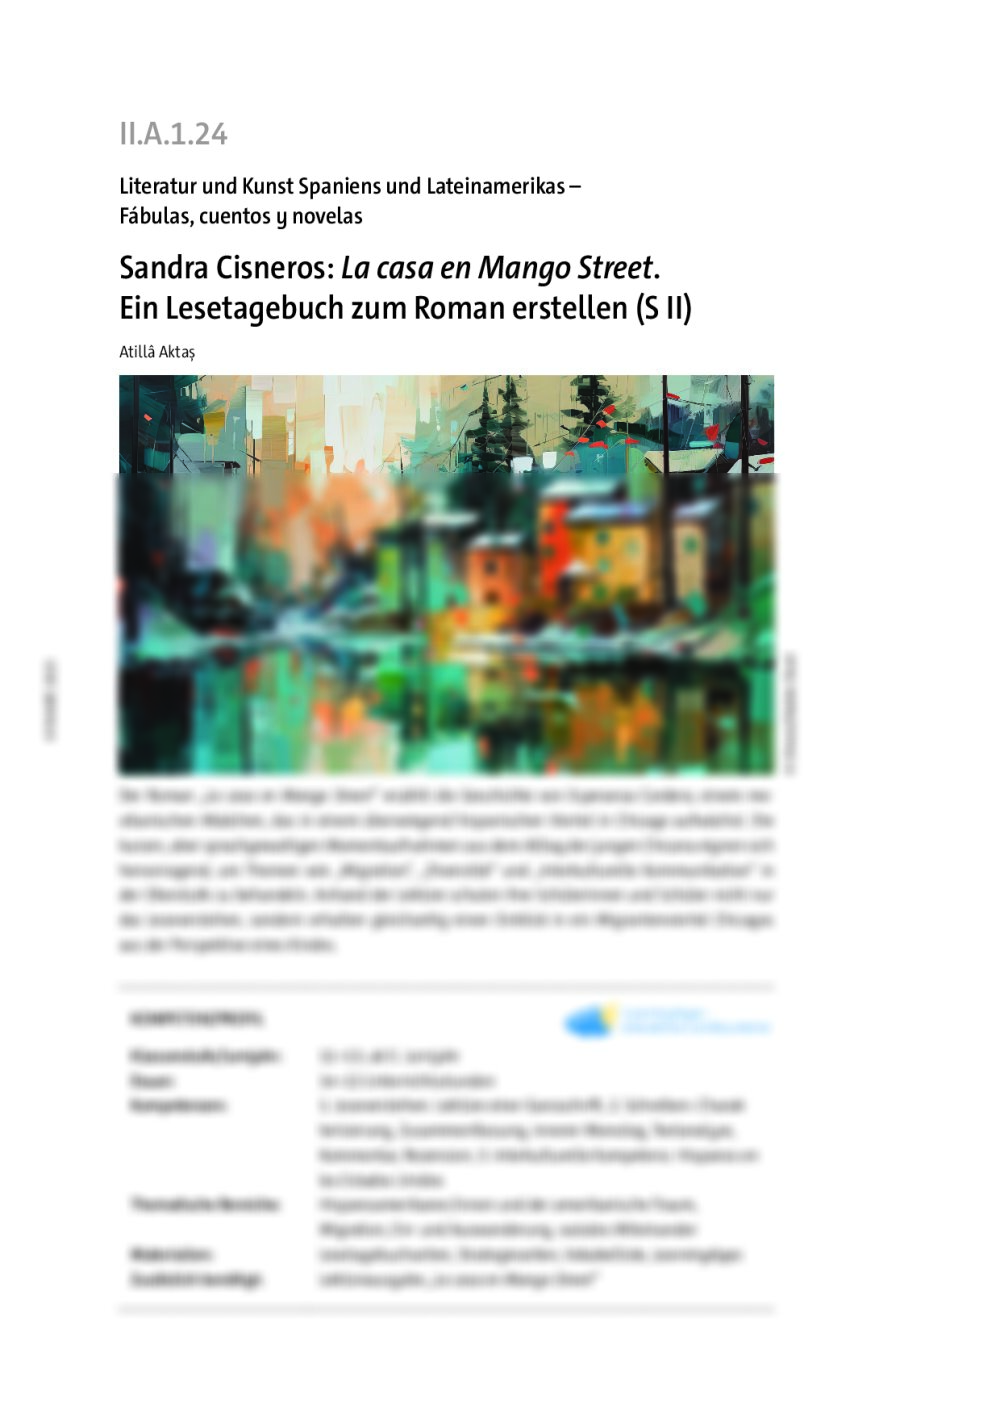 Sandra Cisneros: "La casa en Mango Street" - Seite 1